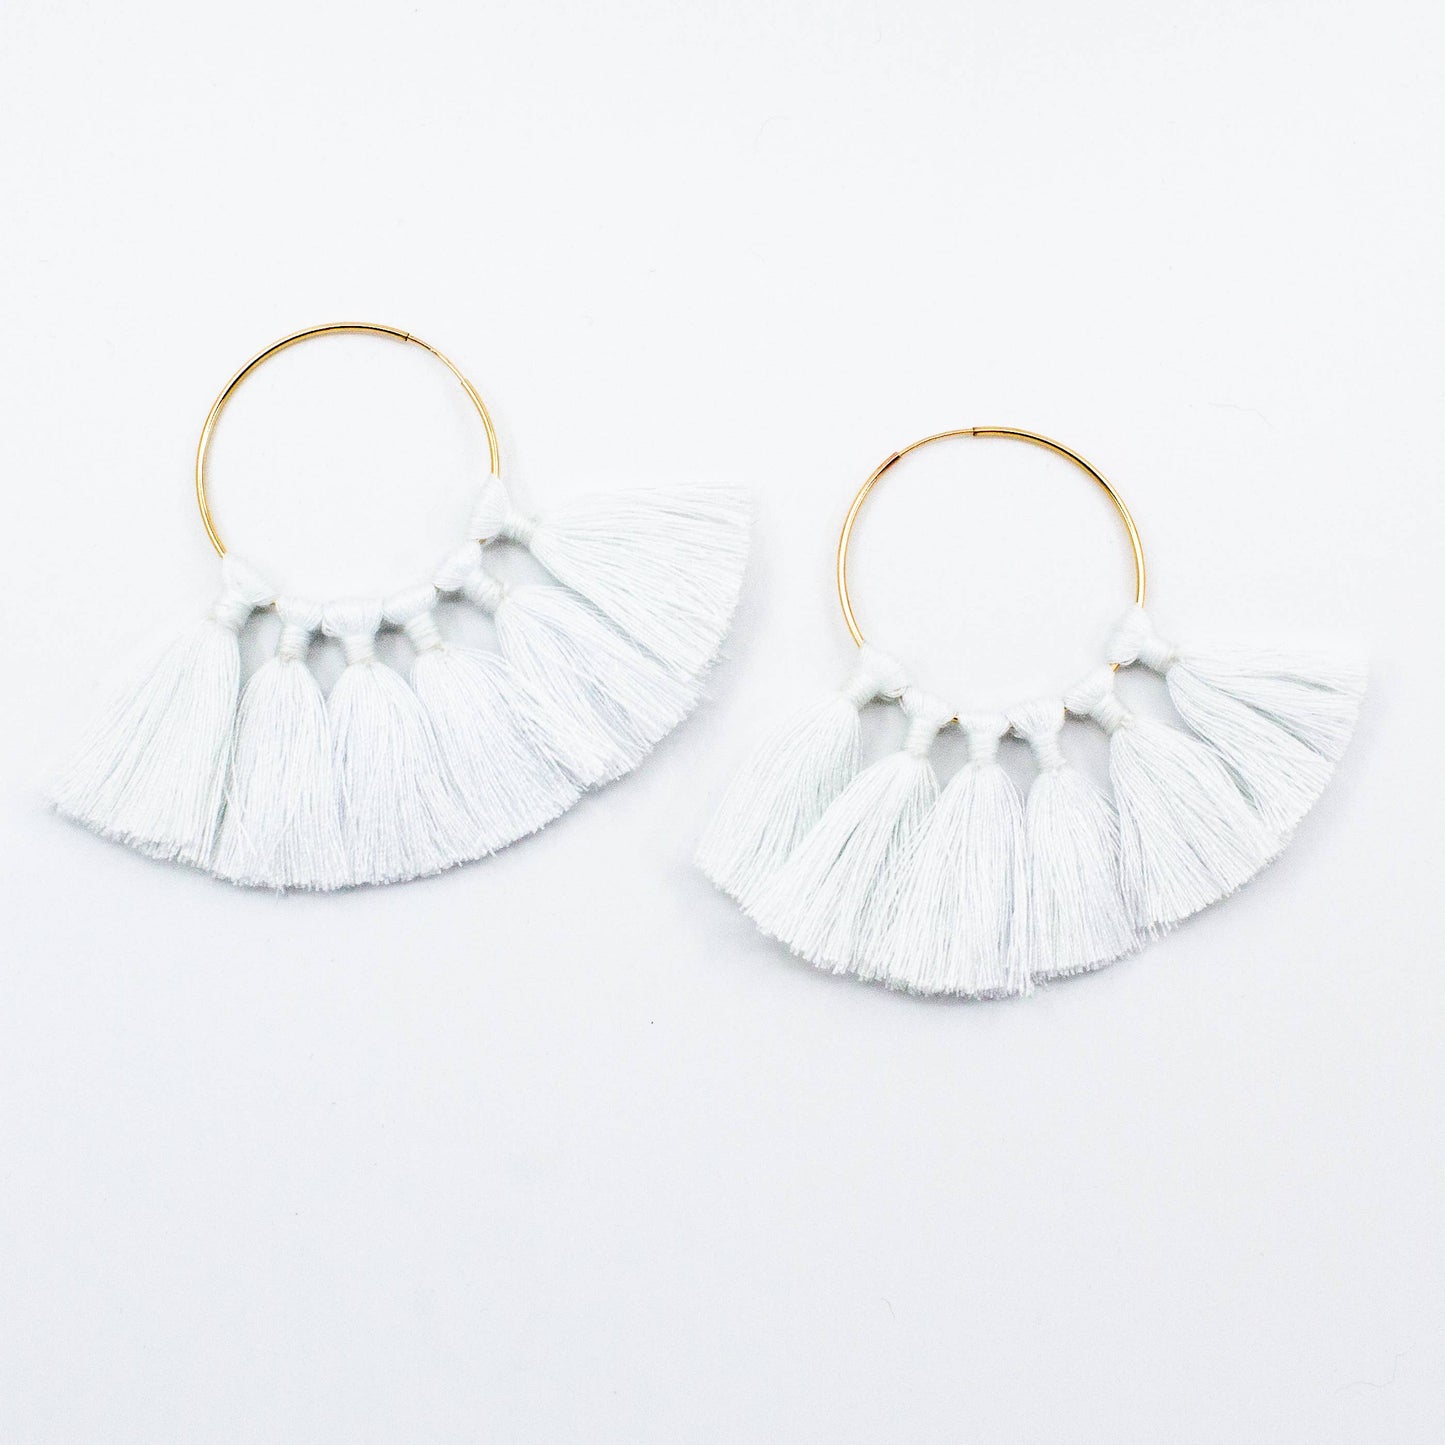 The Tassel Hoop Earrings - White Earrings Dreamer & CO   